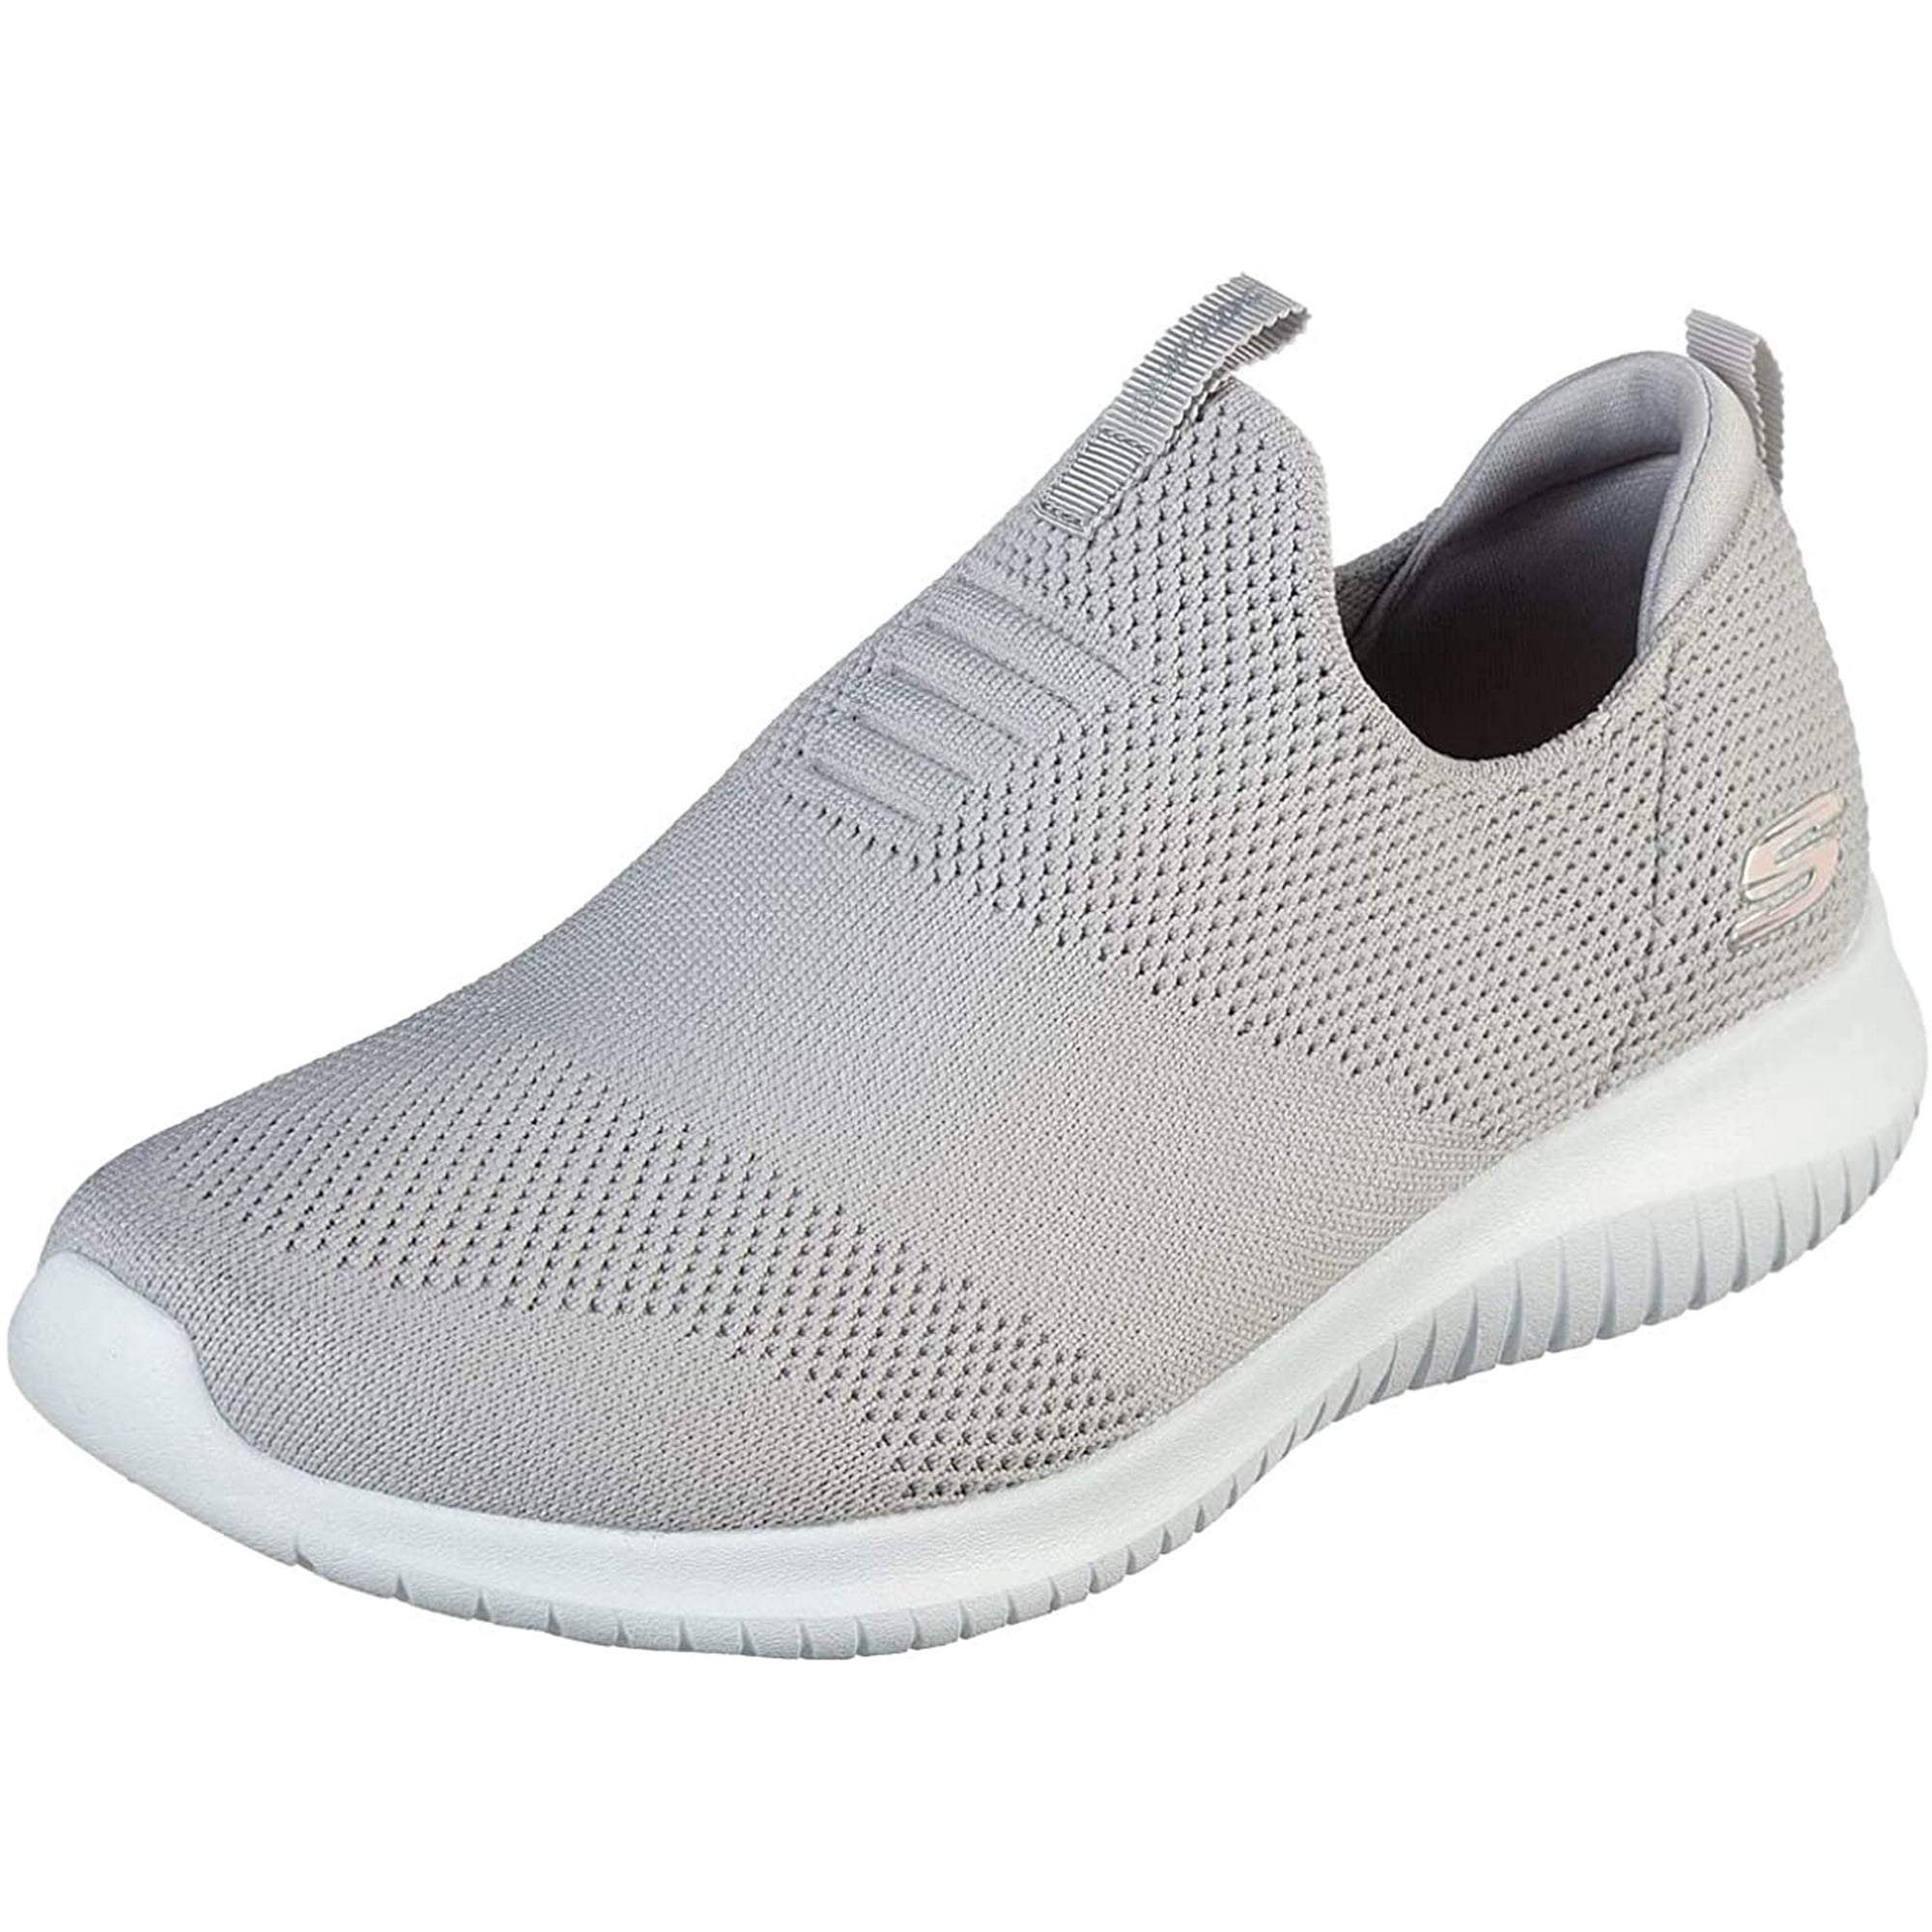 bunke Ny mening Gnide Skechers Women's Ultra Flex-First Take Sneaker, Light Grey, 9.5 M US -  Walmart.com